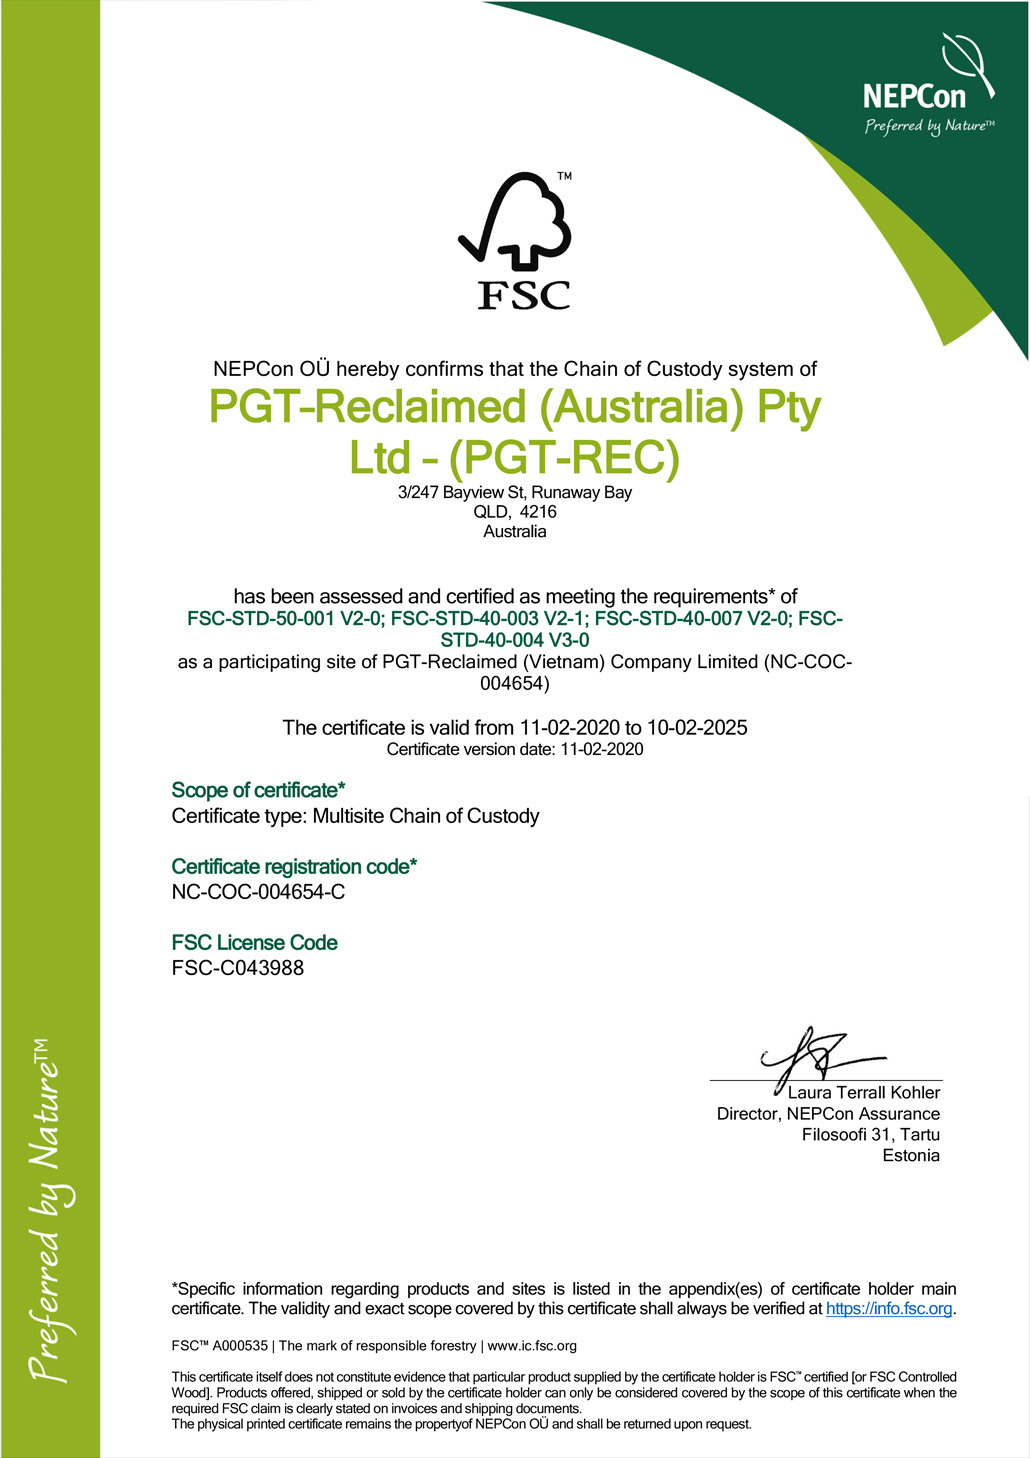 PGT-Reclaimed-FSC-CoC-Certificate-Australia